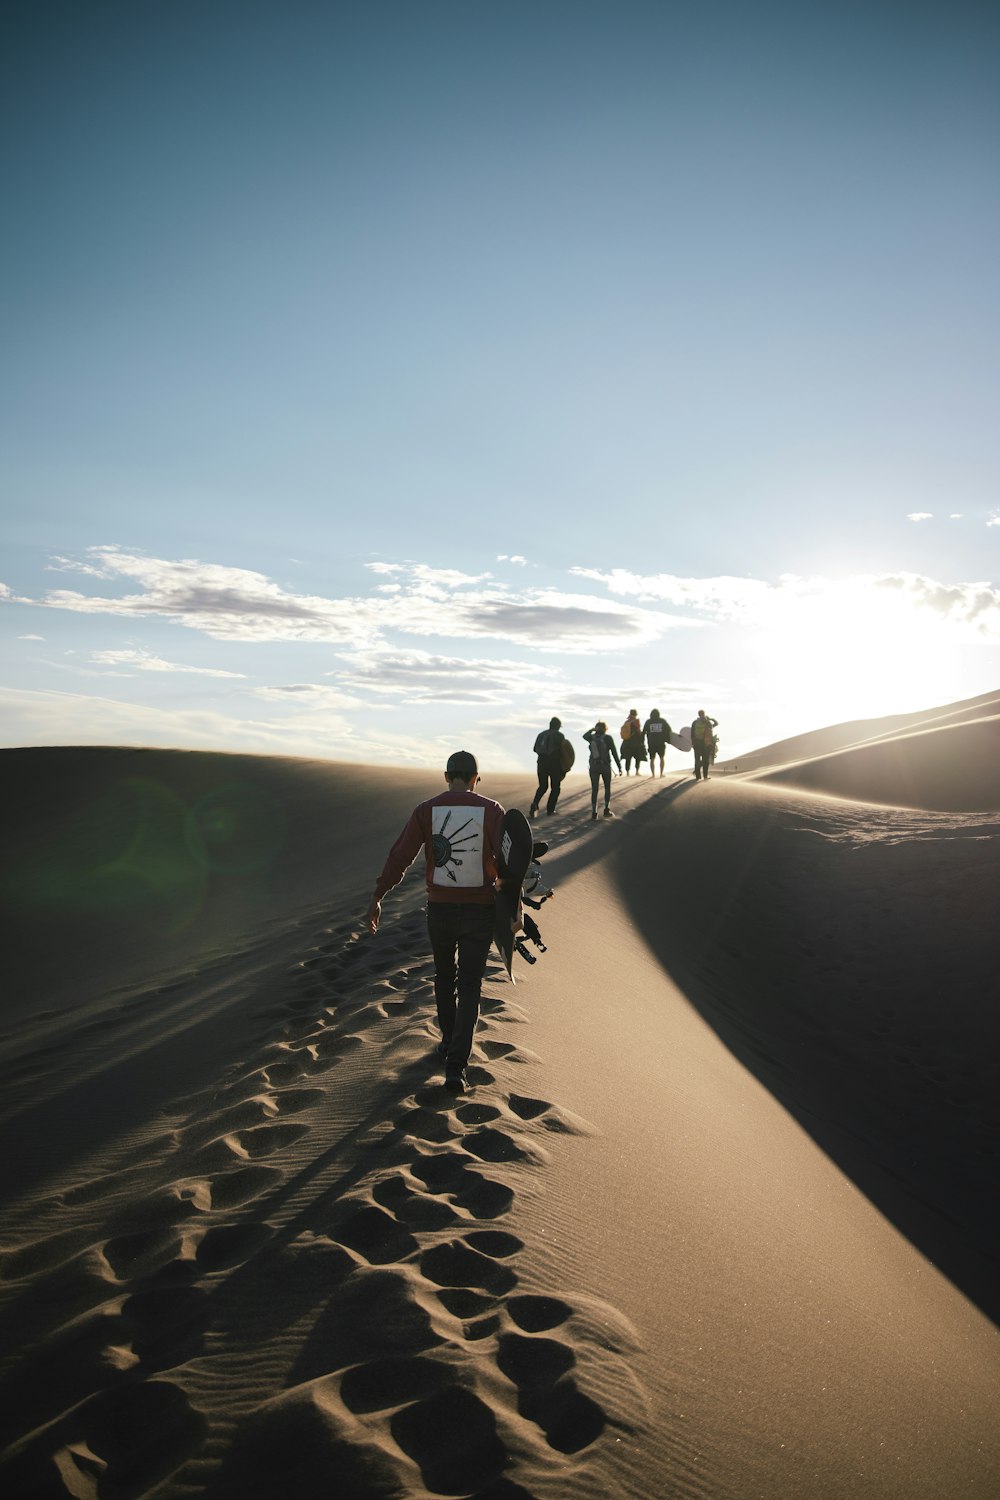 Eine Gruppe von Menschen, die auf einem Pfad in einer Wüste spazieren gehen